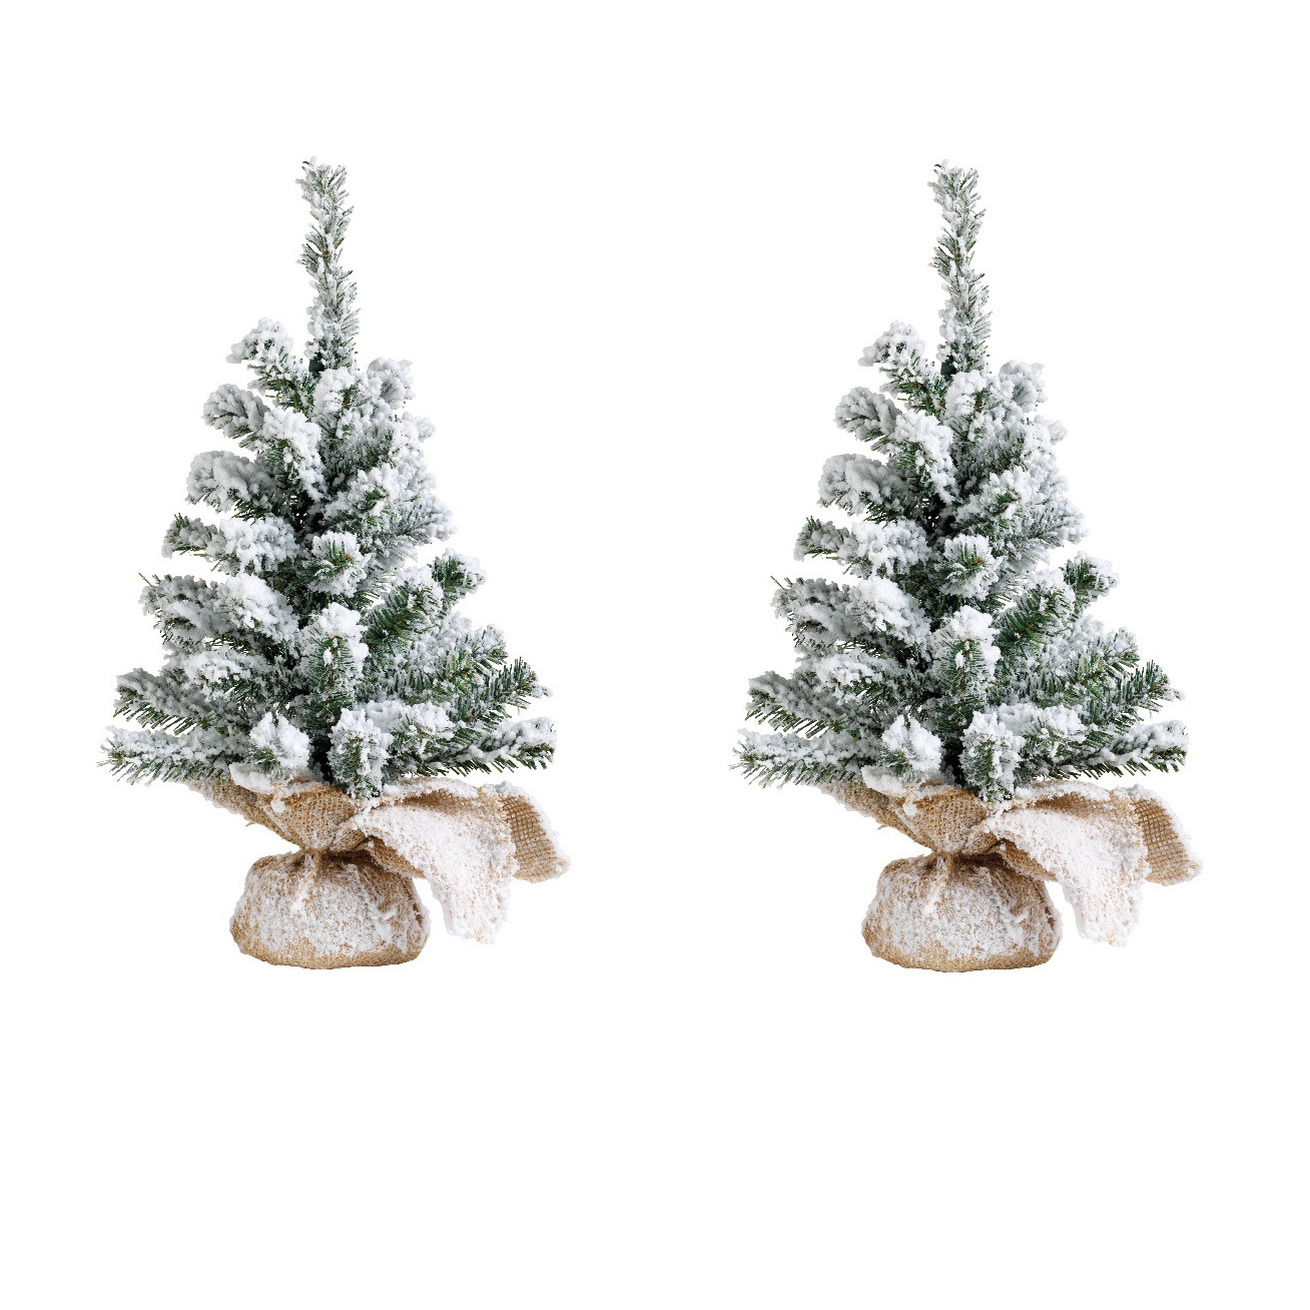 2x stuks kunstboom-kunst kerstboom groen met sneeuw 45 cm